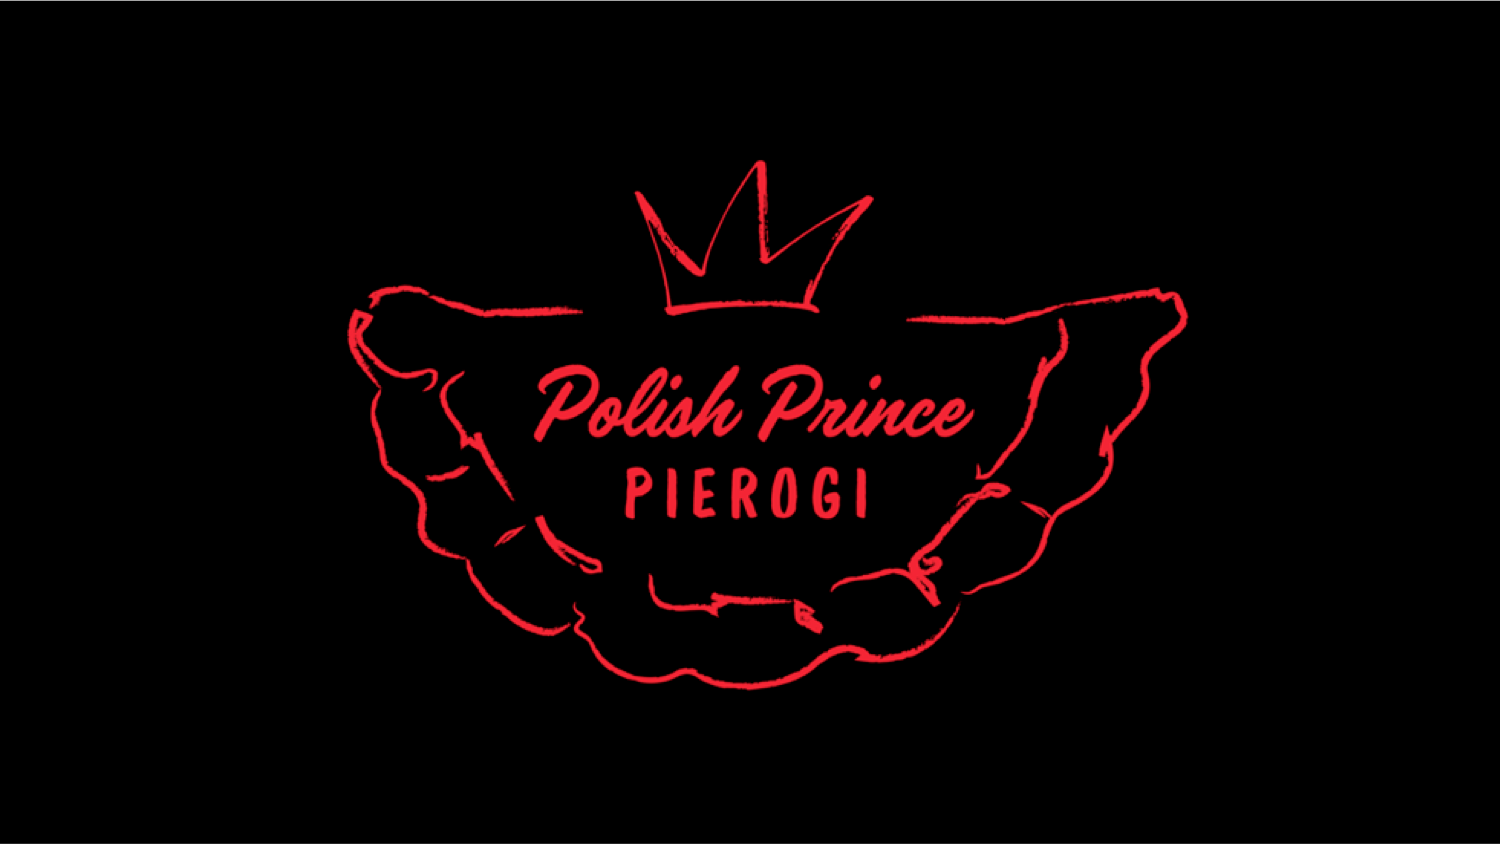 Pierogi Night with Polish Prince